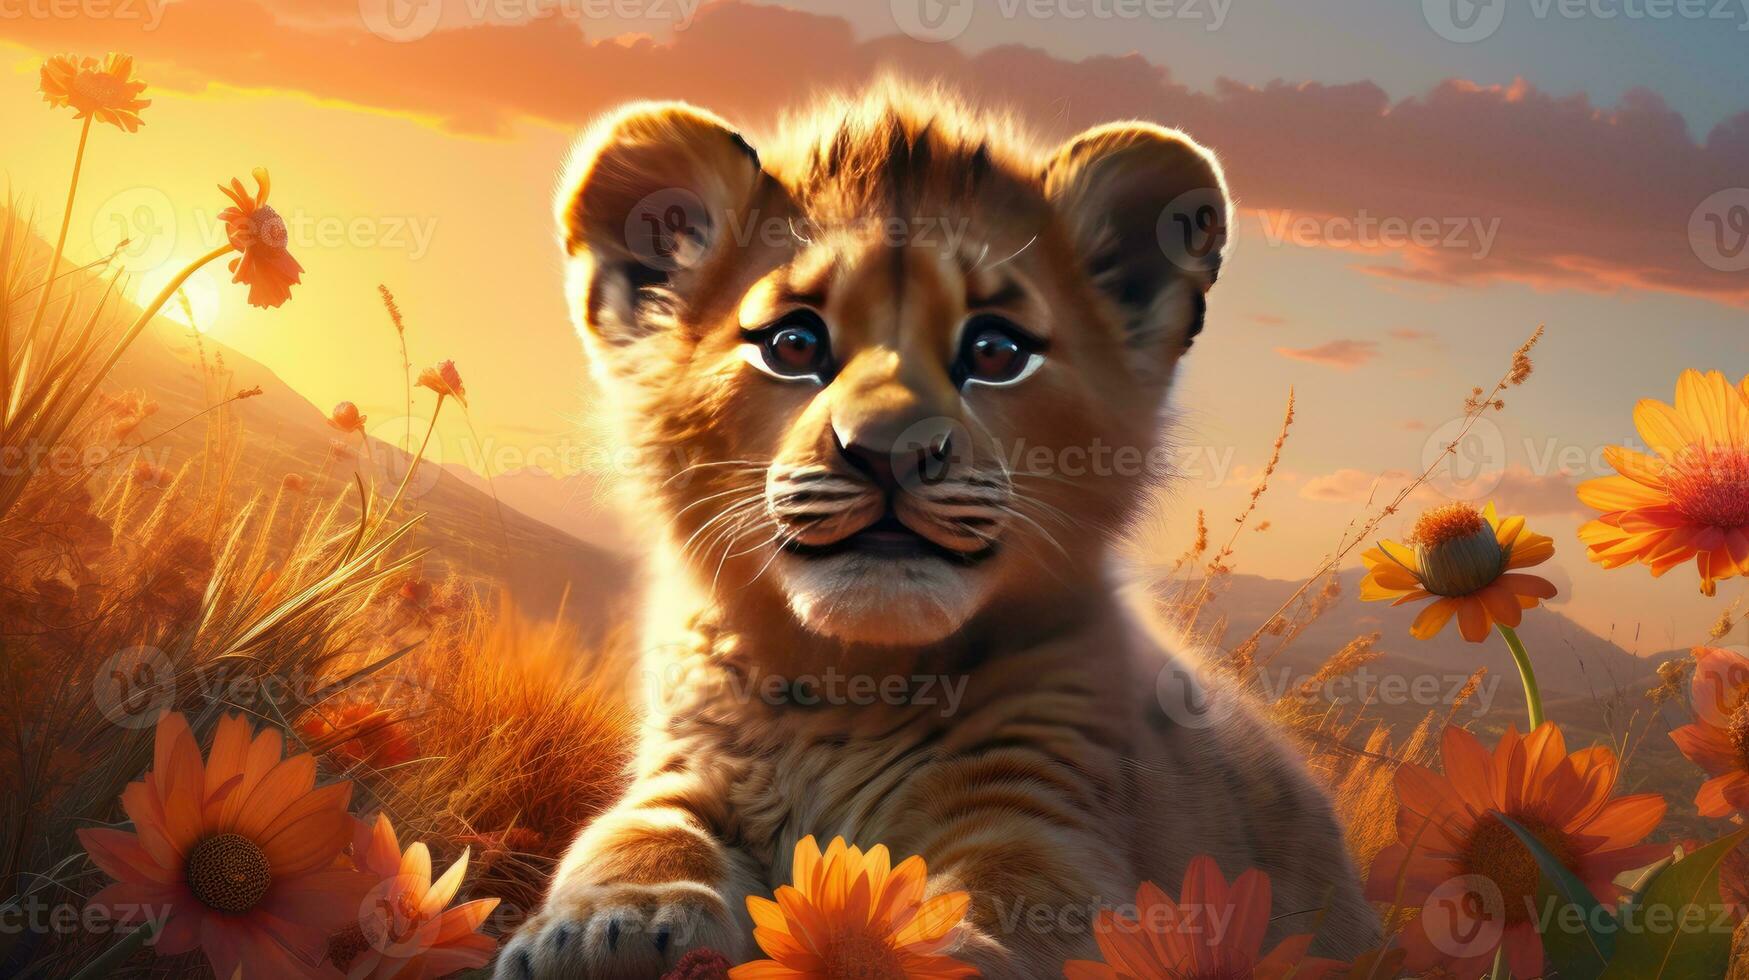 cute tiger cub sitting on a flower meadow photo